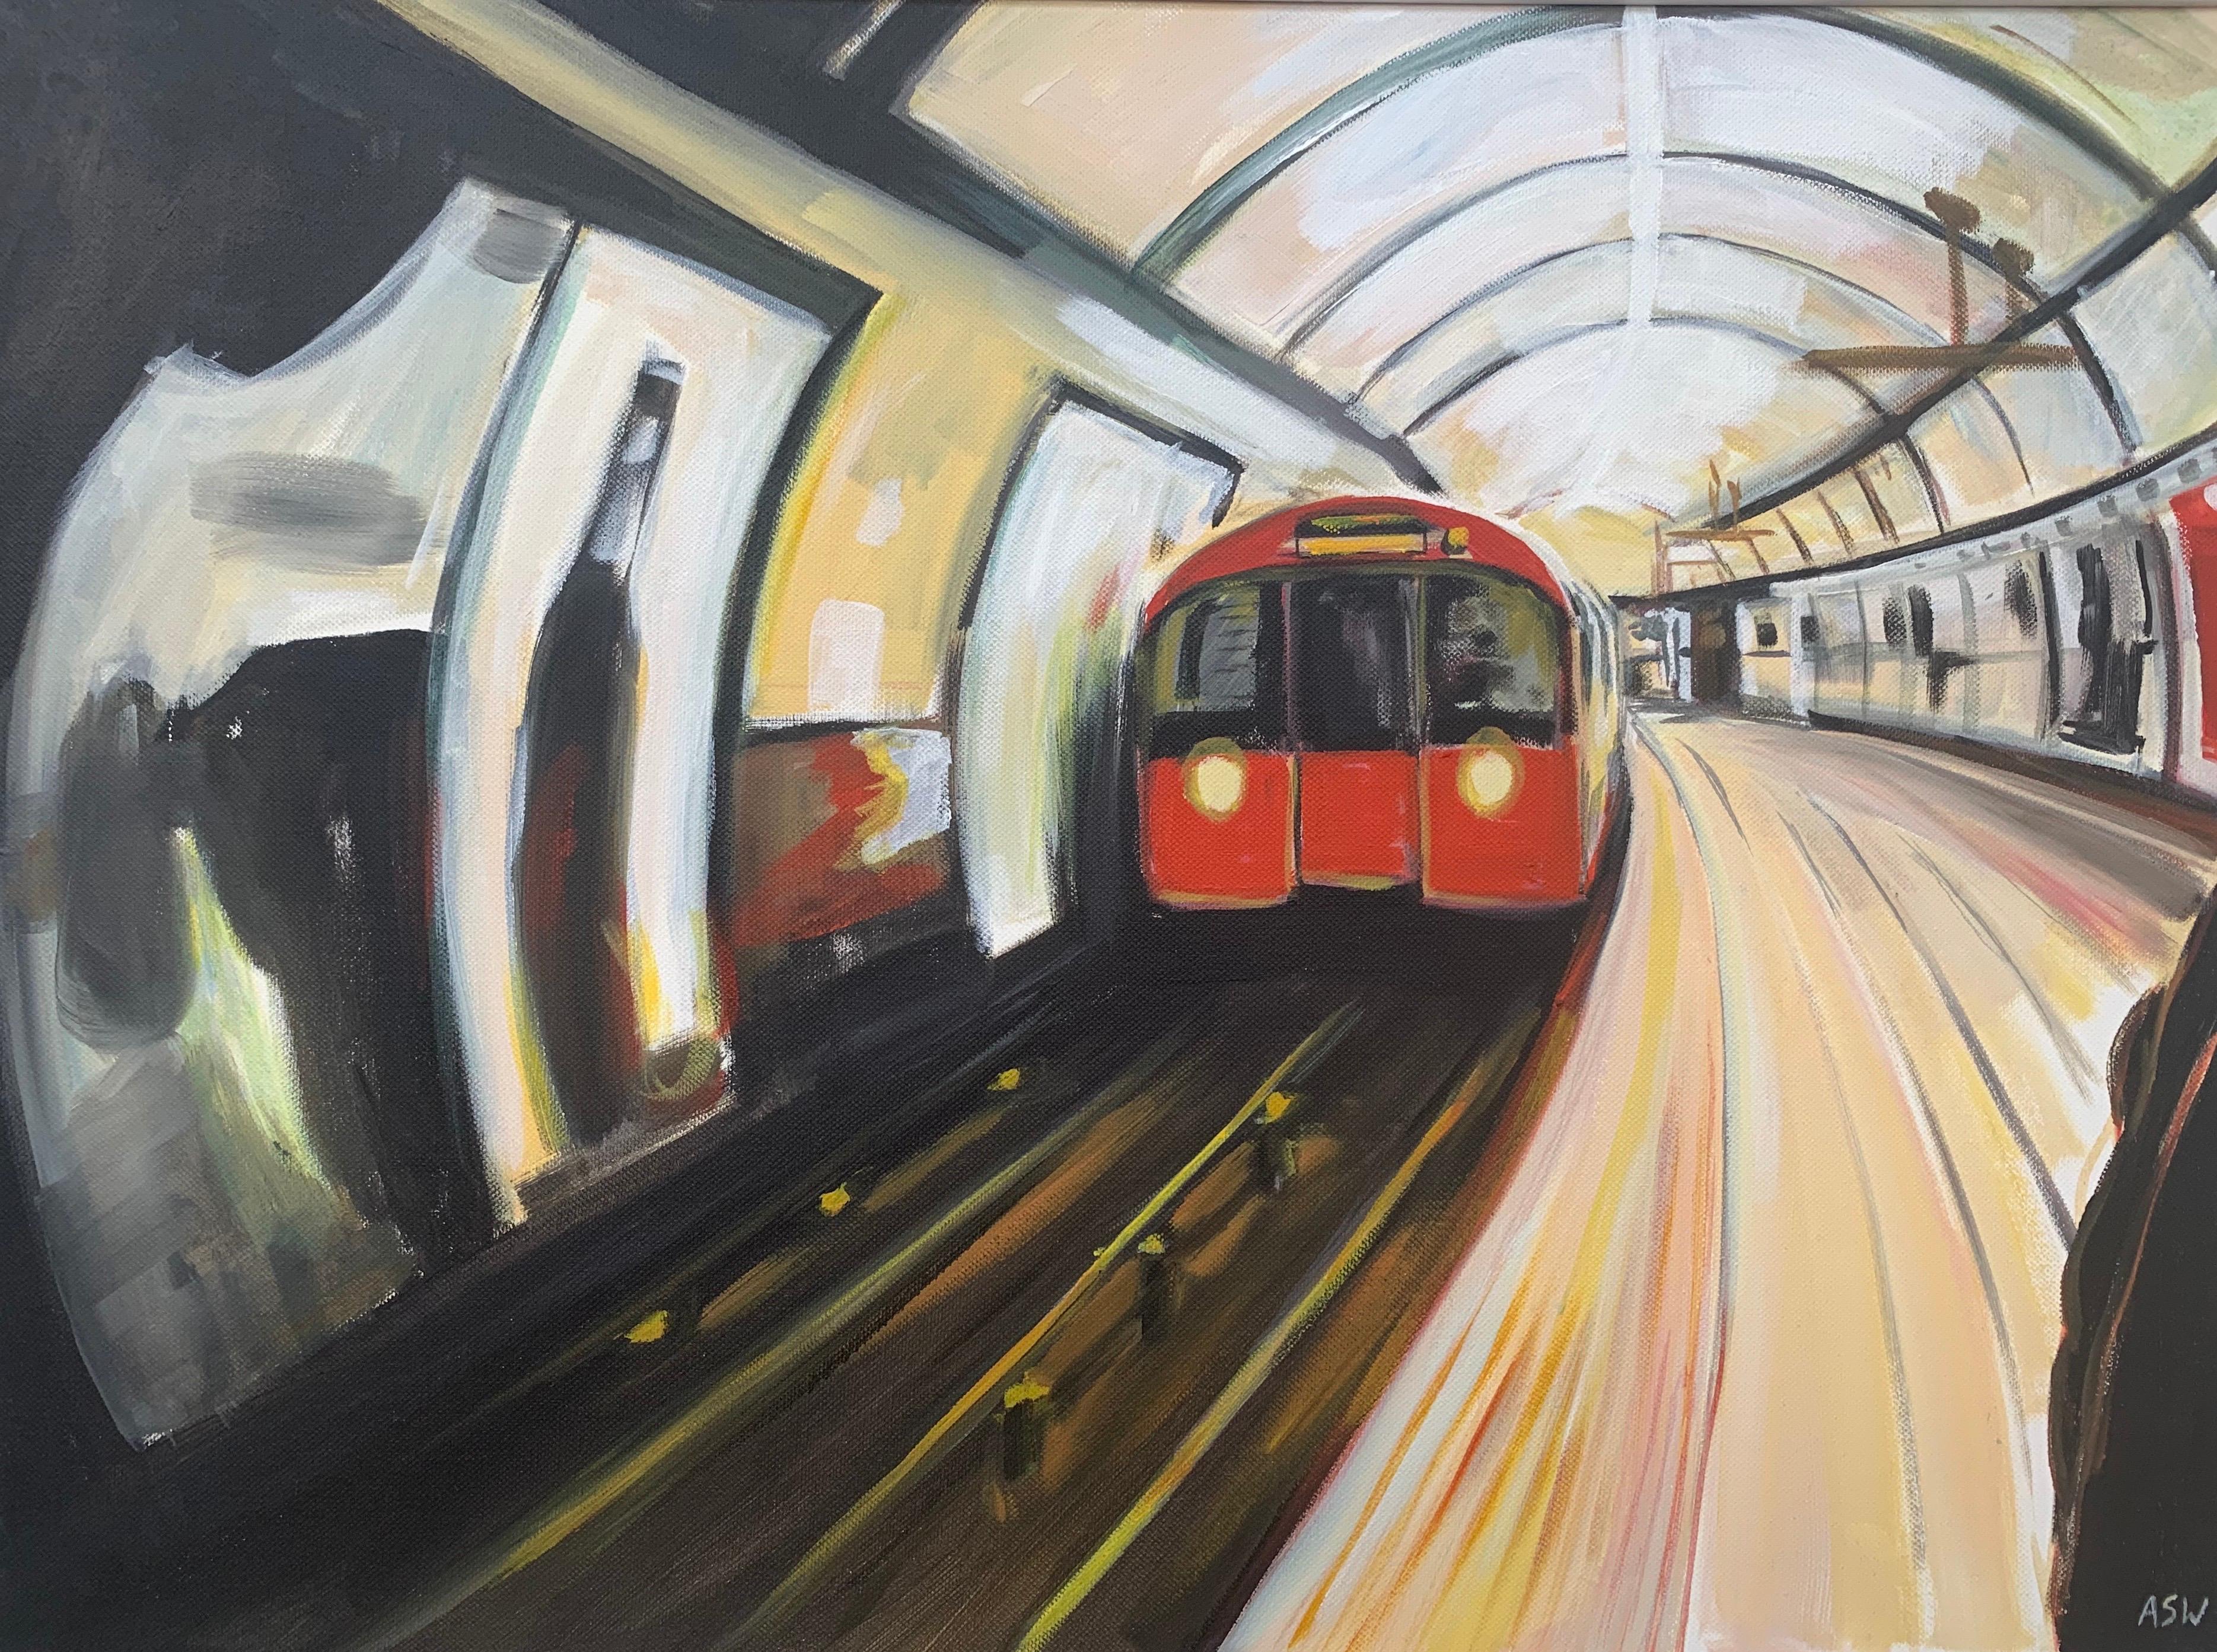 Originalgemälde der Londoner U-Bahn von Angela Wakefield, einer führenden britischen Künstlerin der Gegenwart 

Kunst misst 24 x 18 Zoll
Rahmenmaß 27 x 21 Zoll 

Angela Wakefield war zweimal auf dem Titelblatt von 